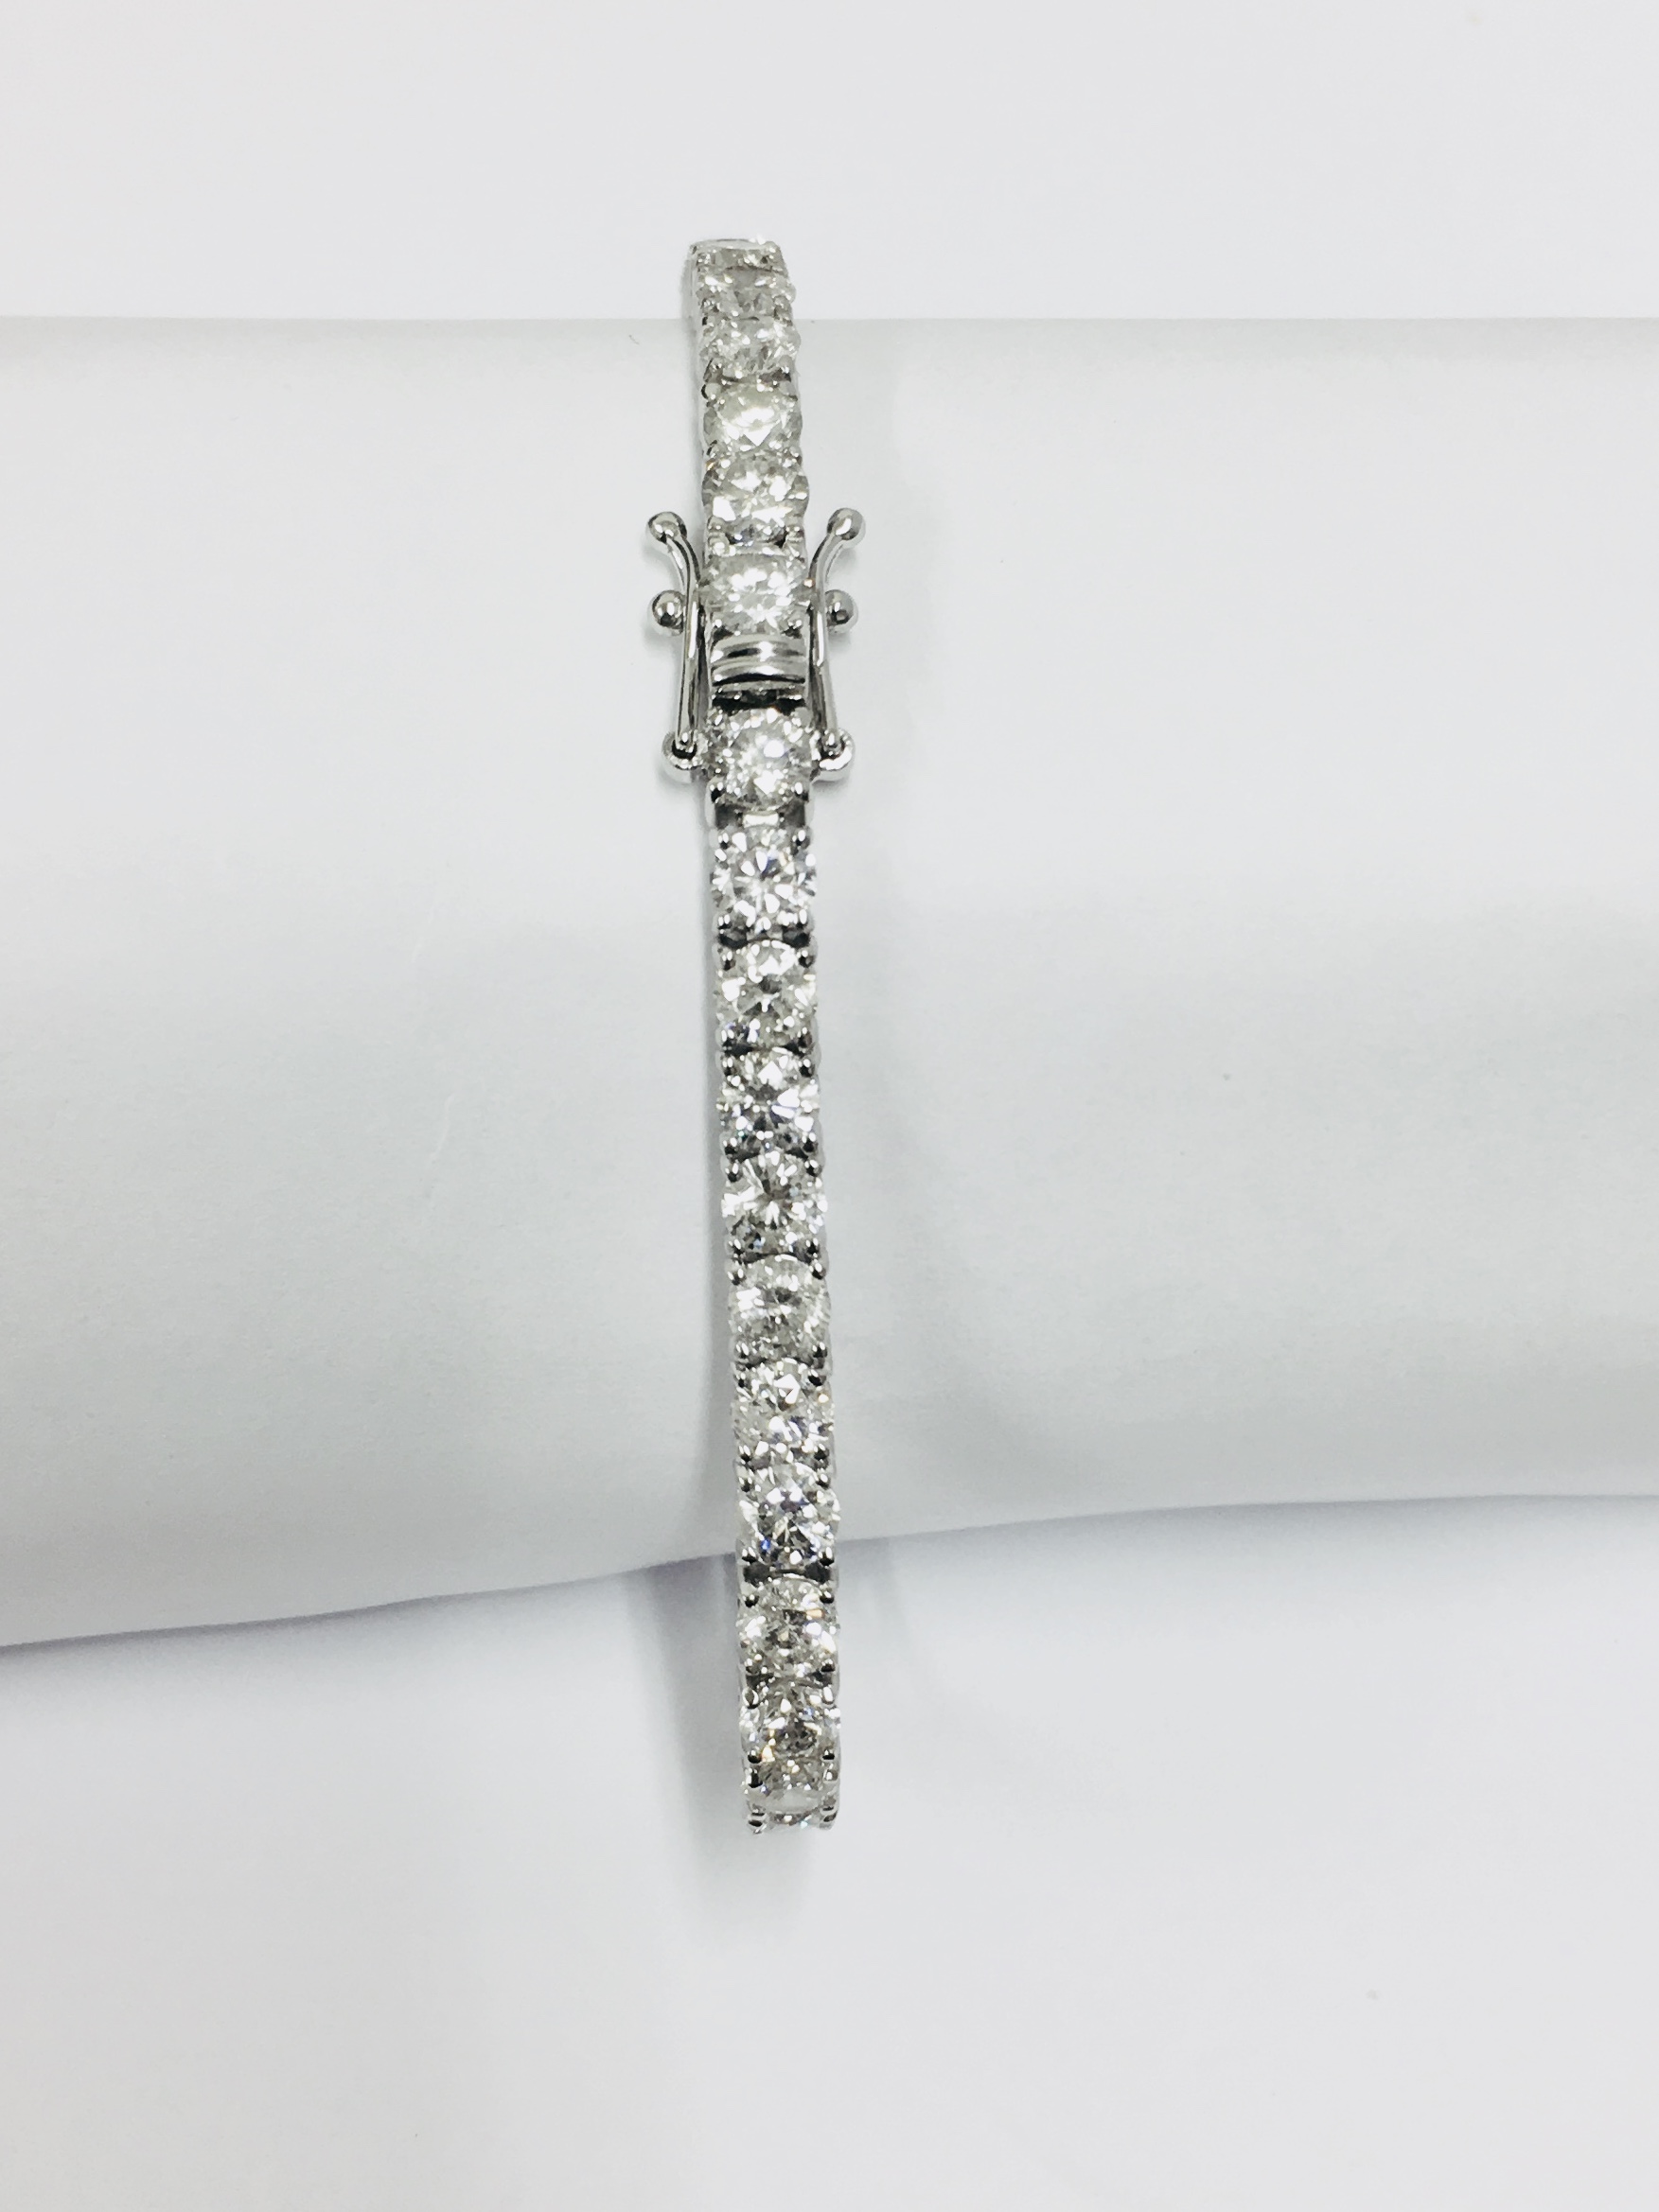 8.00ct Diamond tennis bracelet set with brilliant cut diamonds of G colour